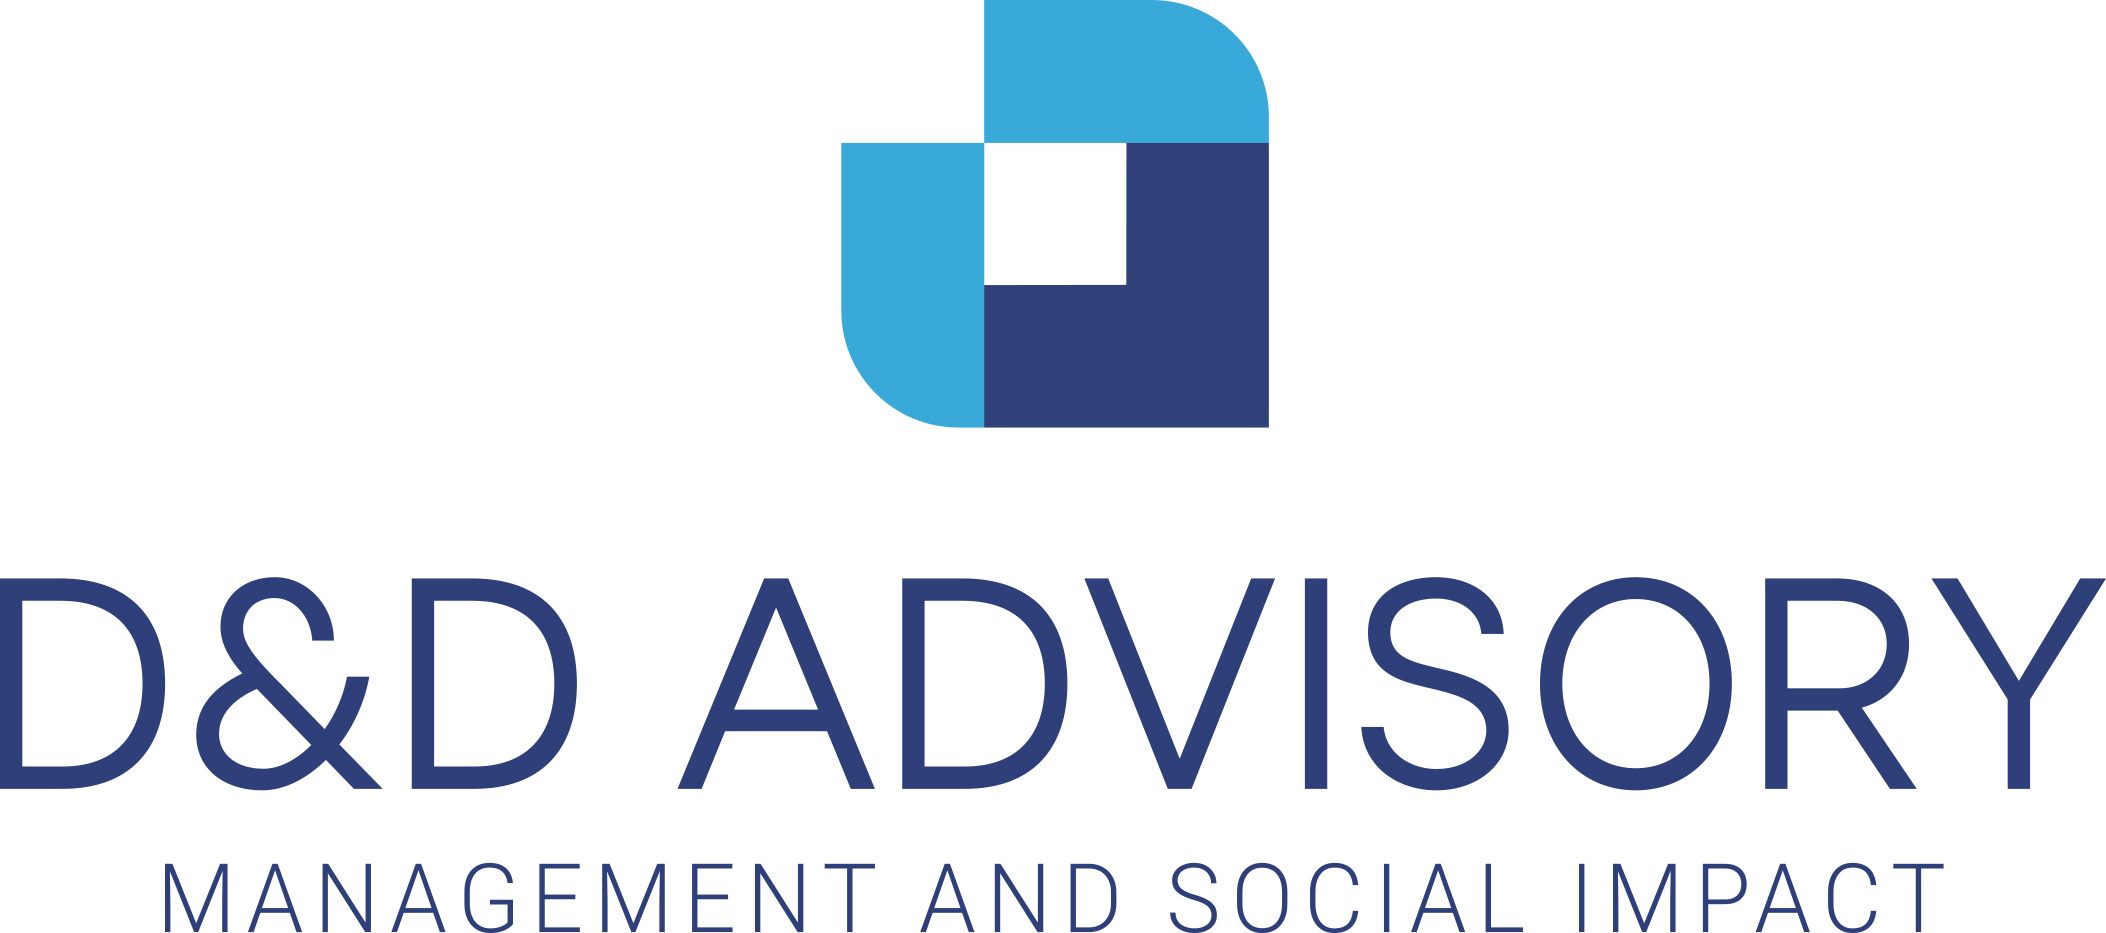 D&D Advisory logo completo